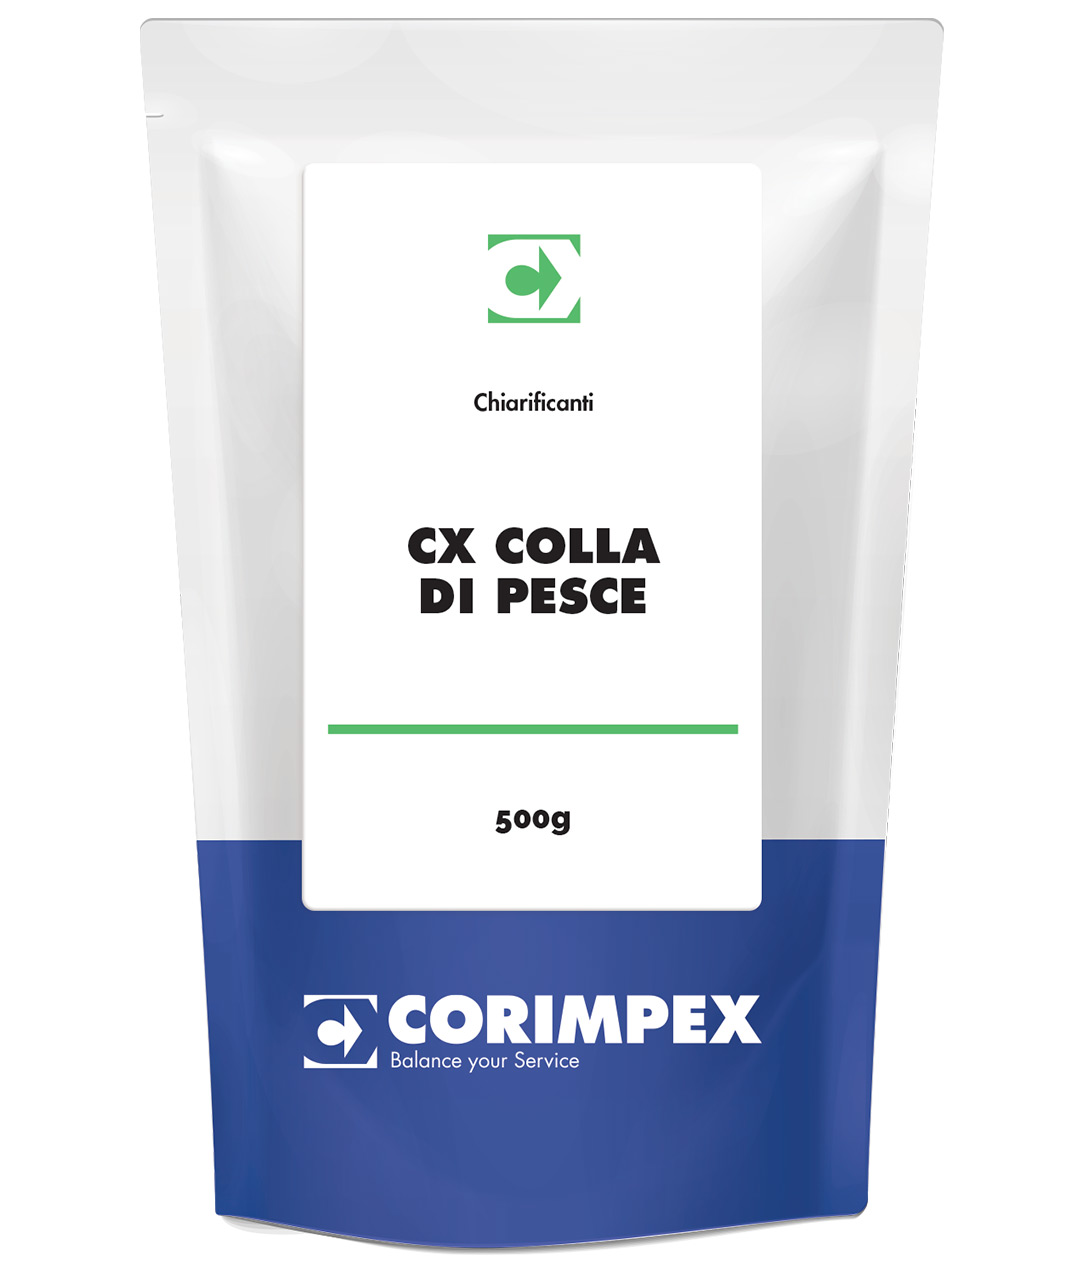 CX COLLA DI PESCE